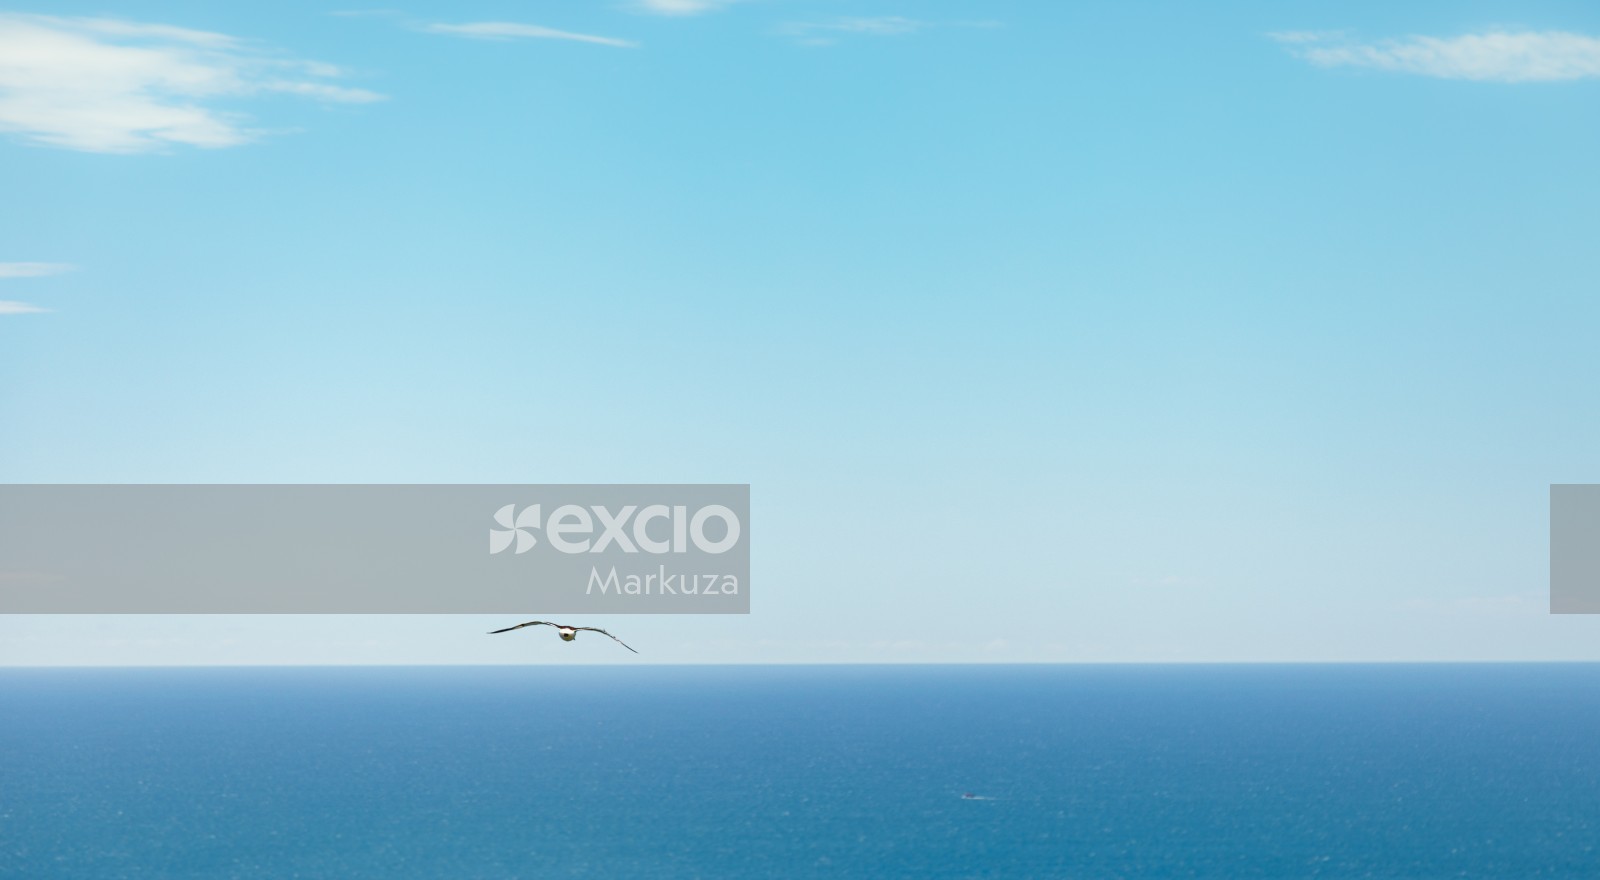 Albatross day flight